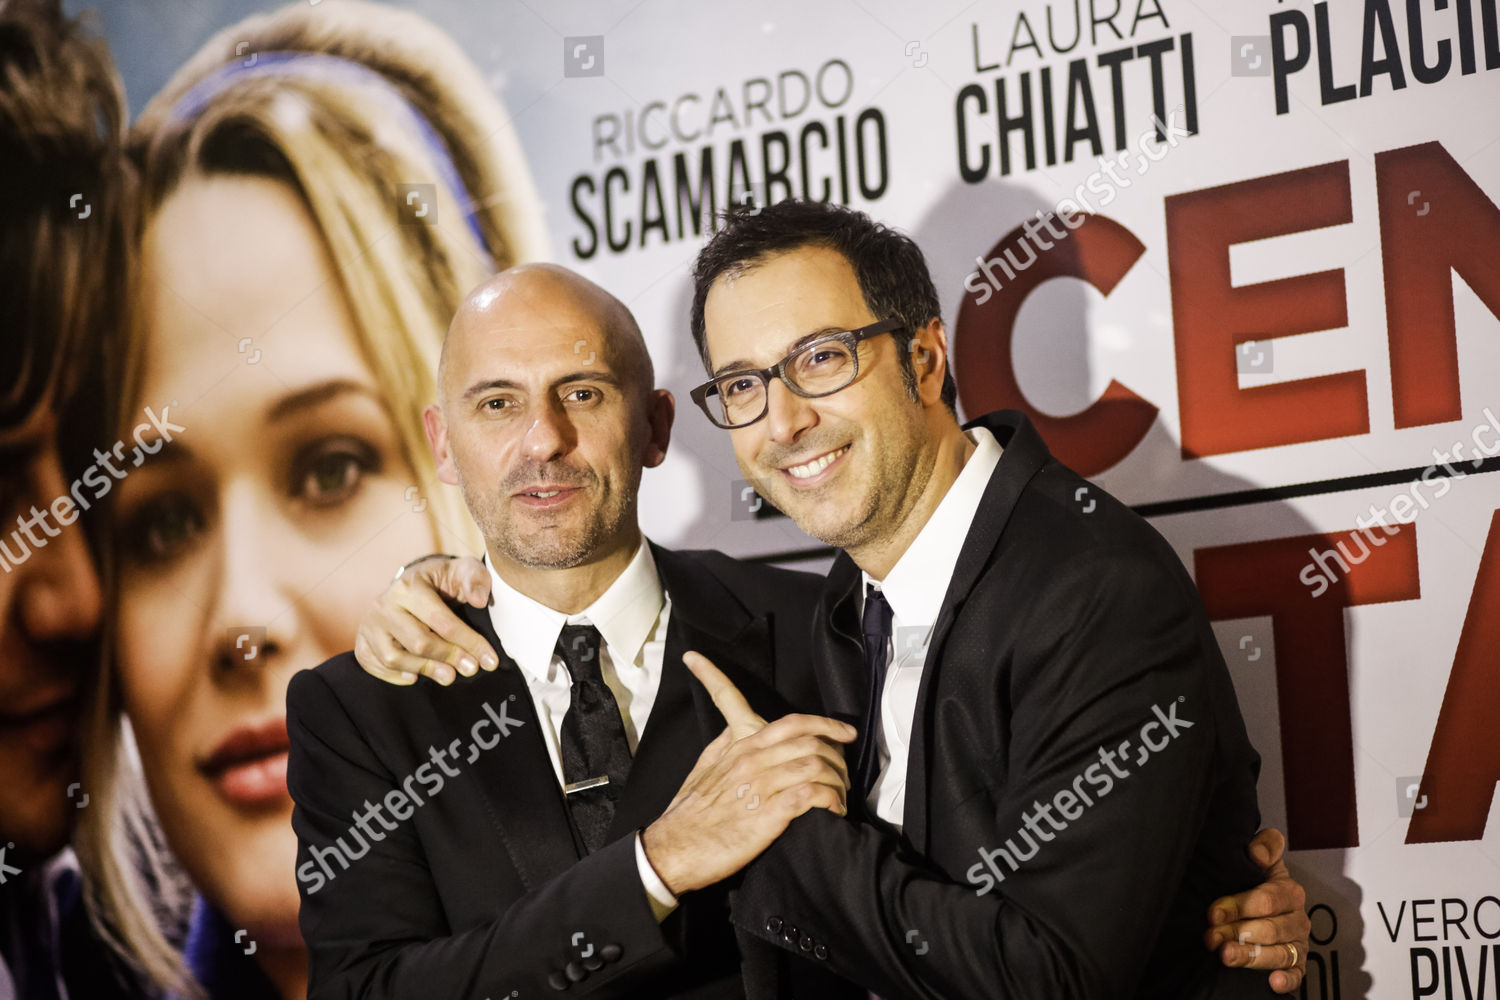 La Cena Di Natale.Director Marco Ponti Luca Bianchini Editorial Stock Photo Stock Image Shutterstock